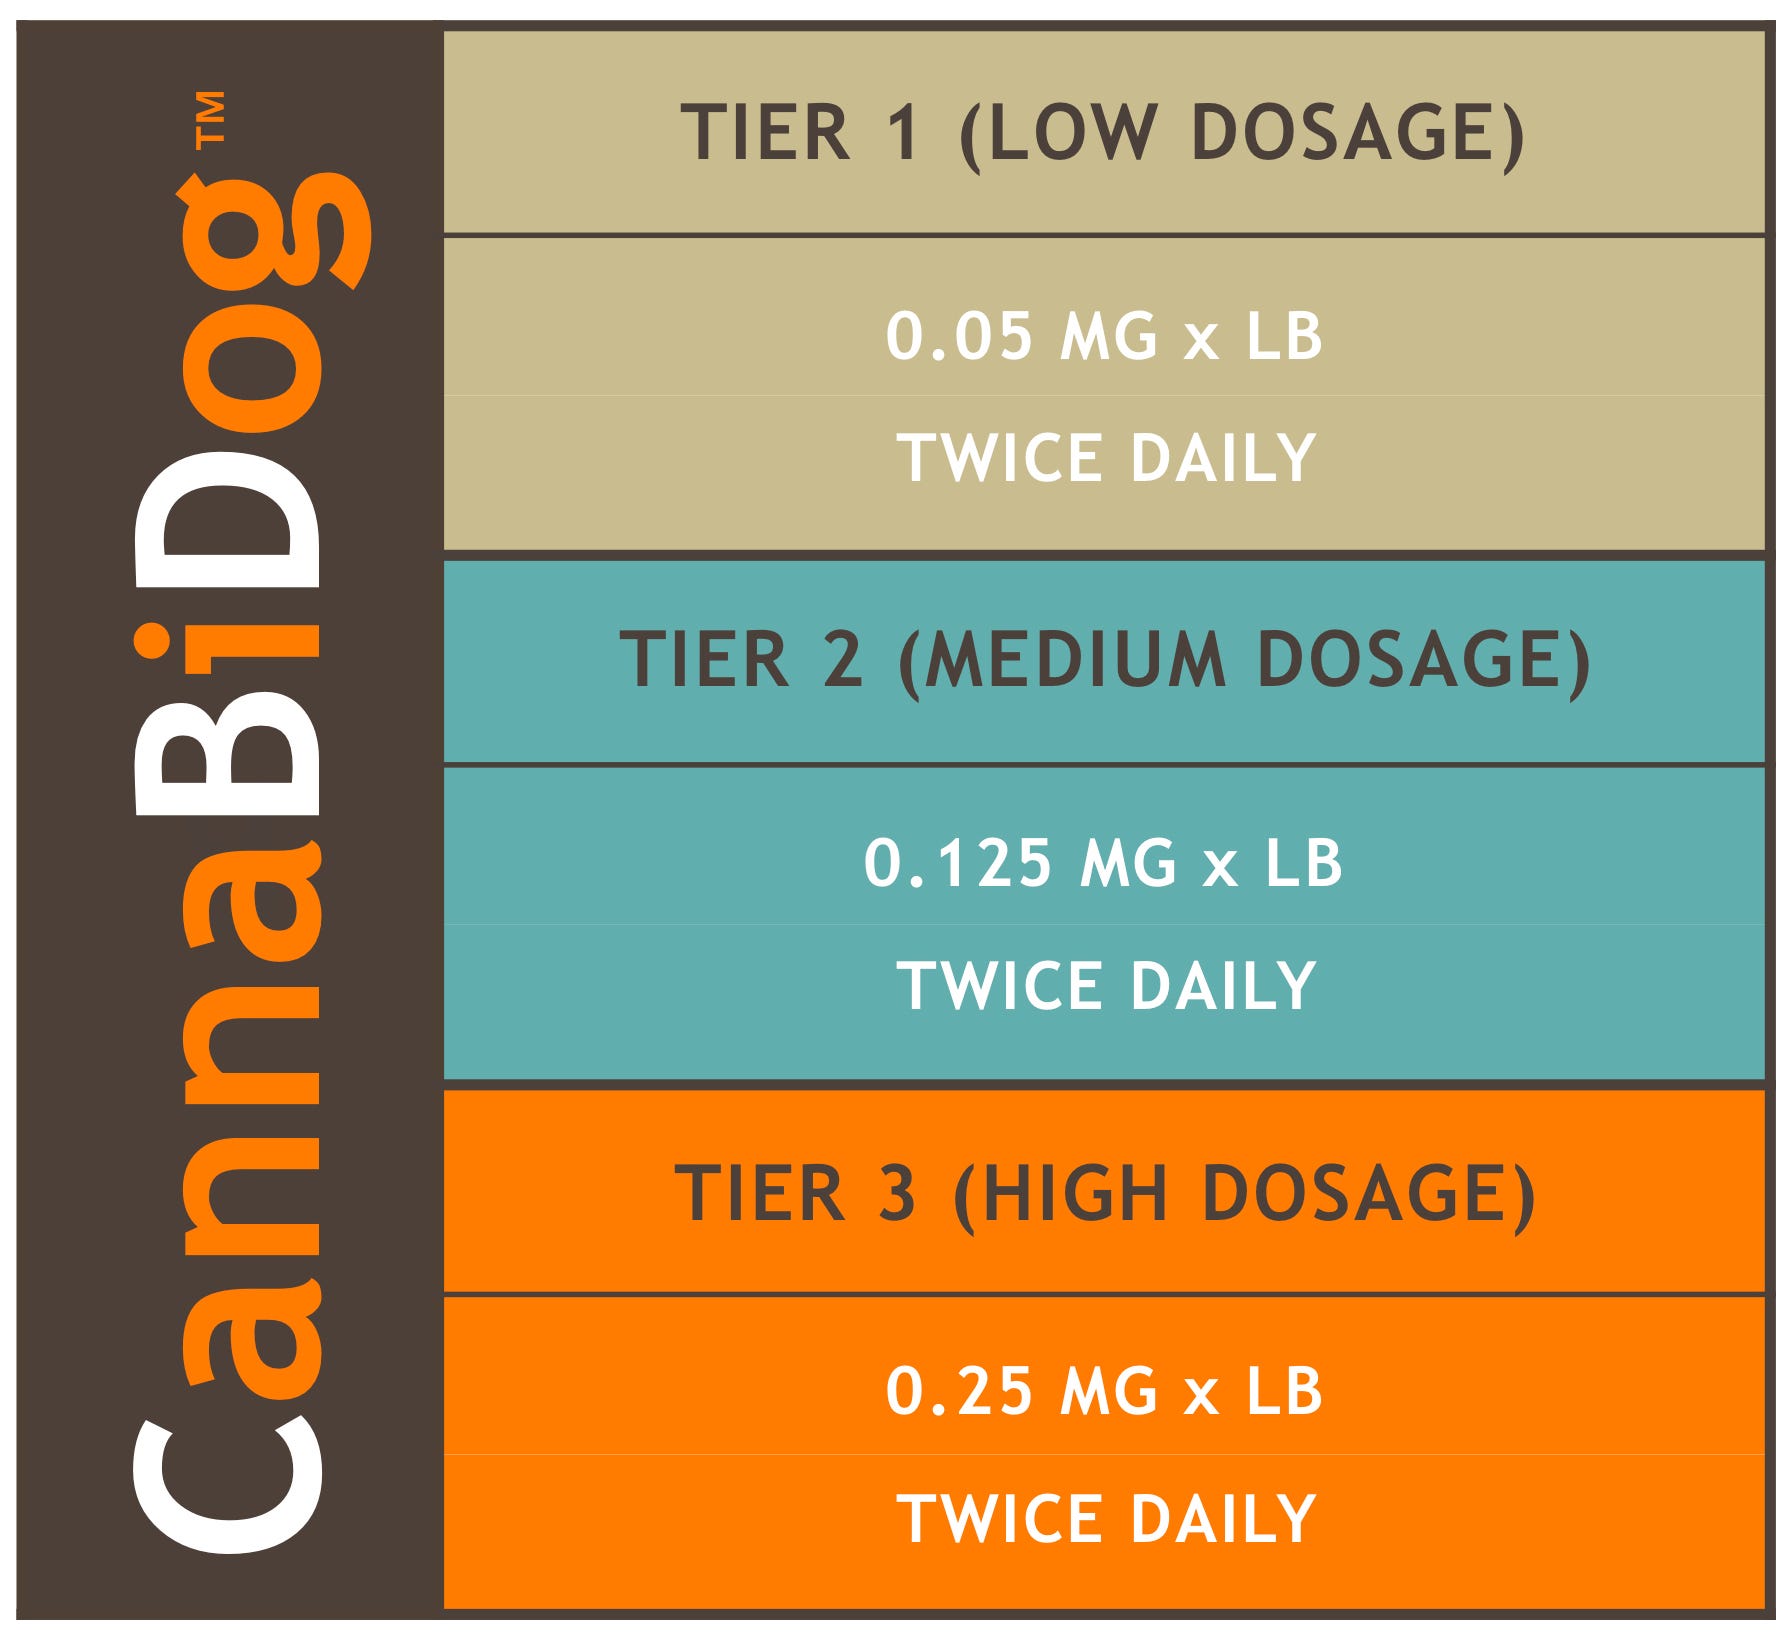 Cbd Dosage Chart